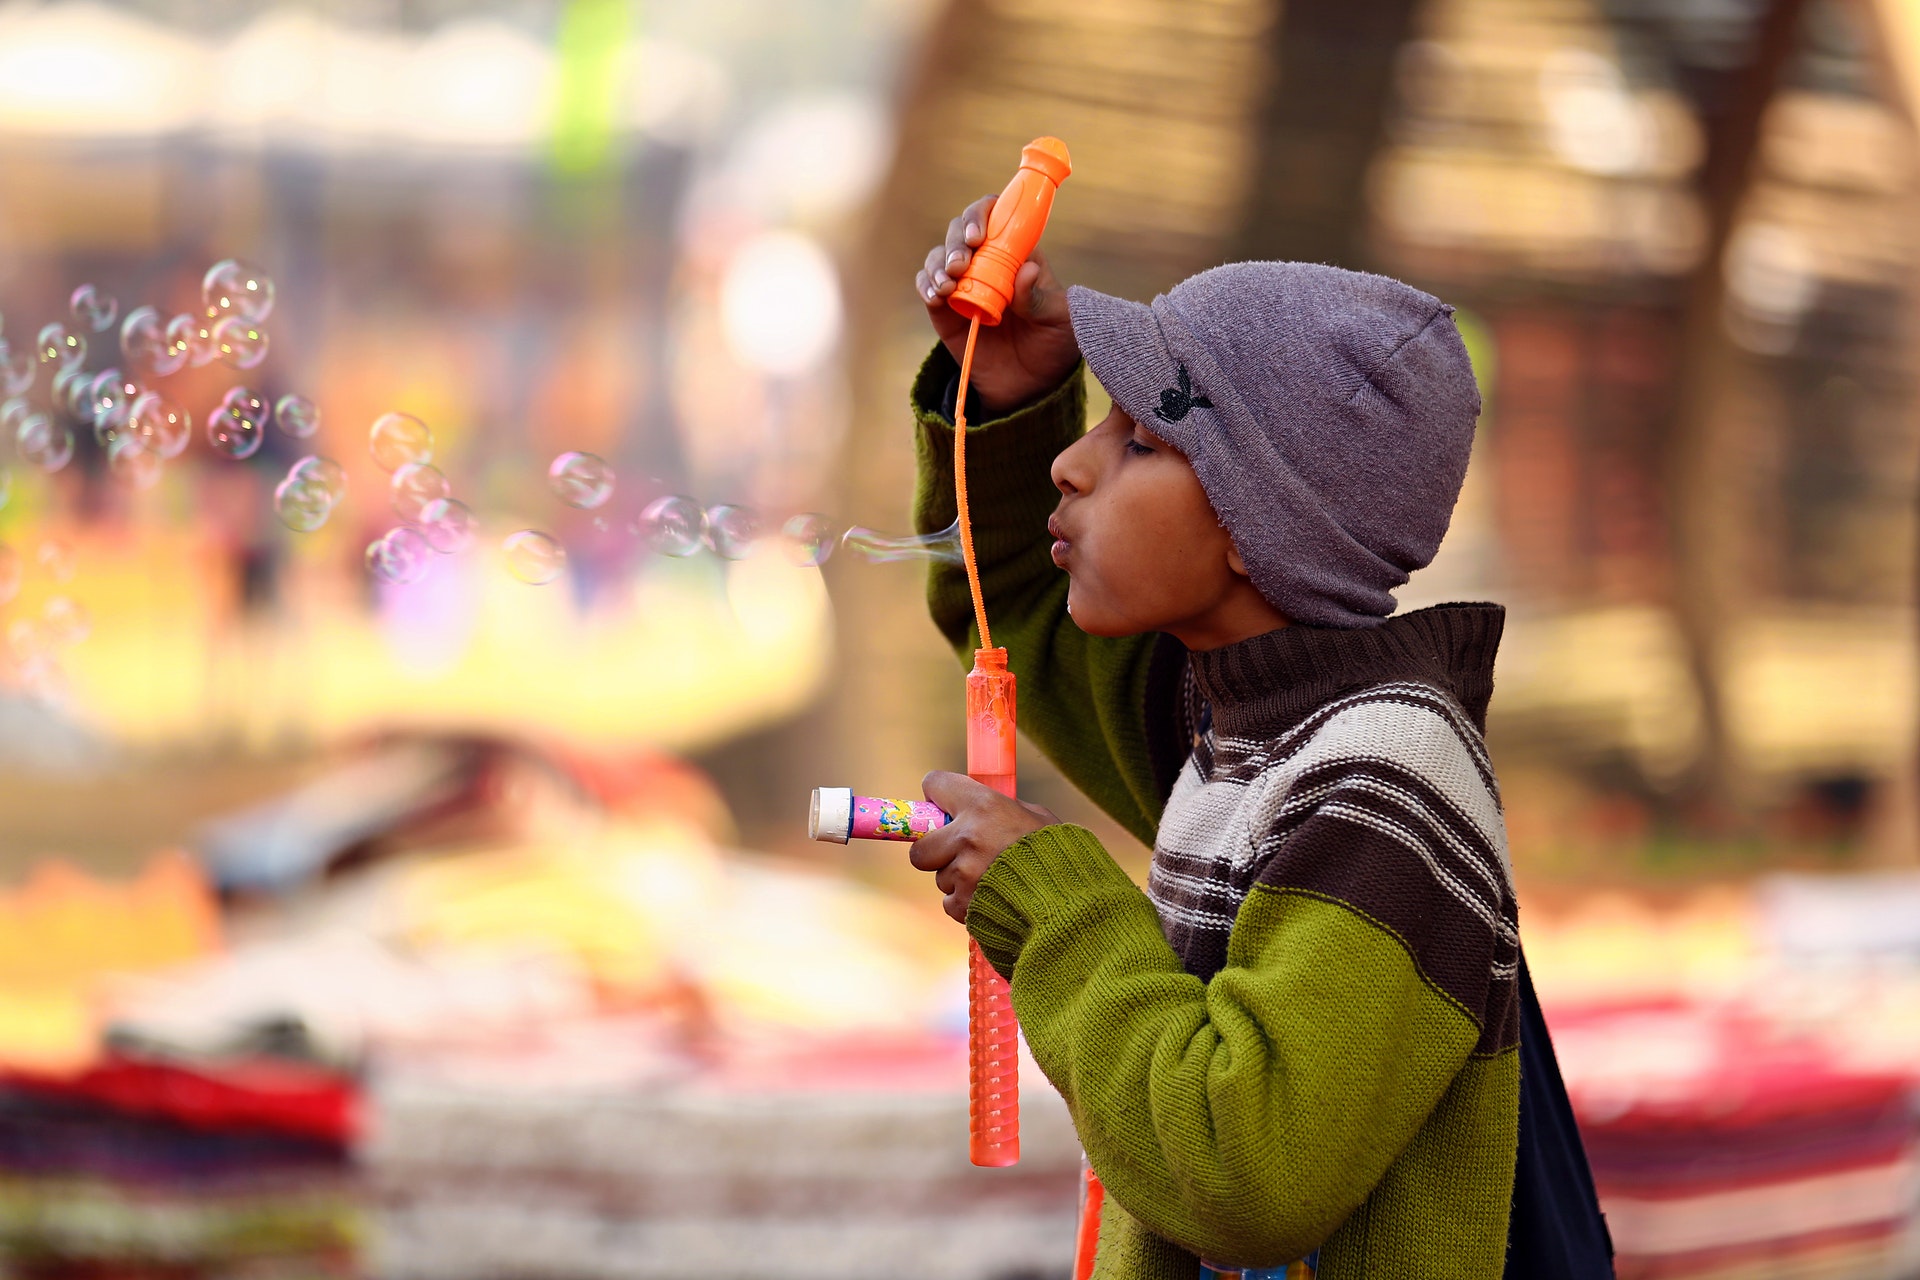 Child blowing bubbles. 